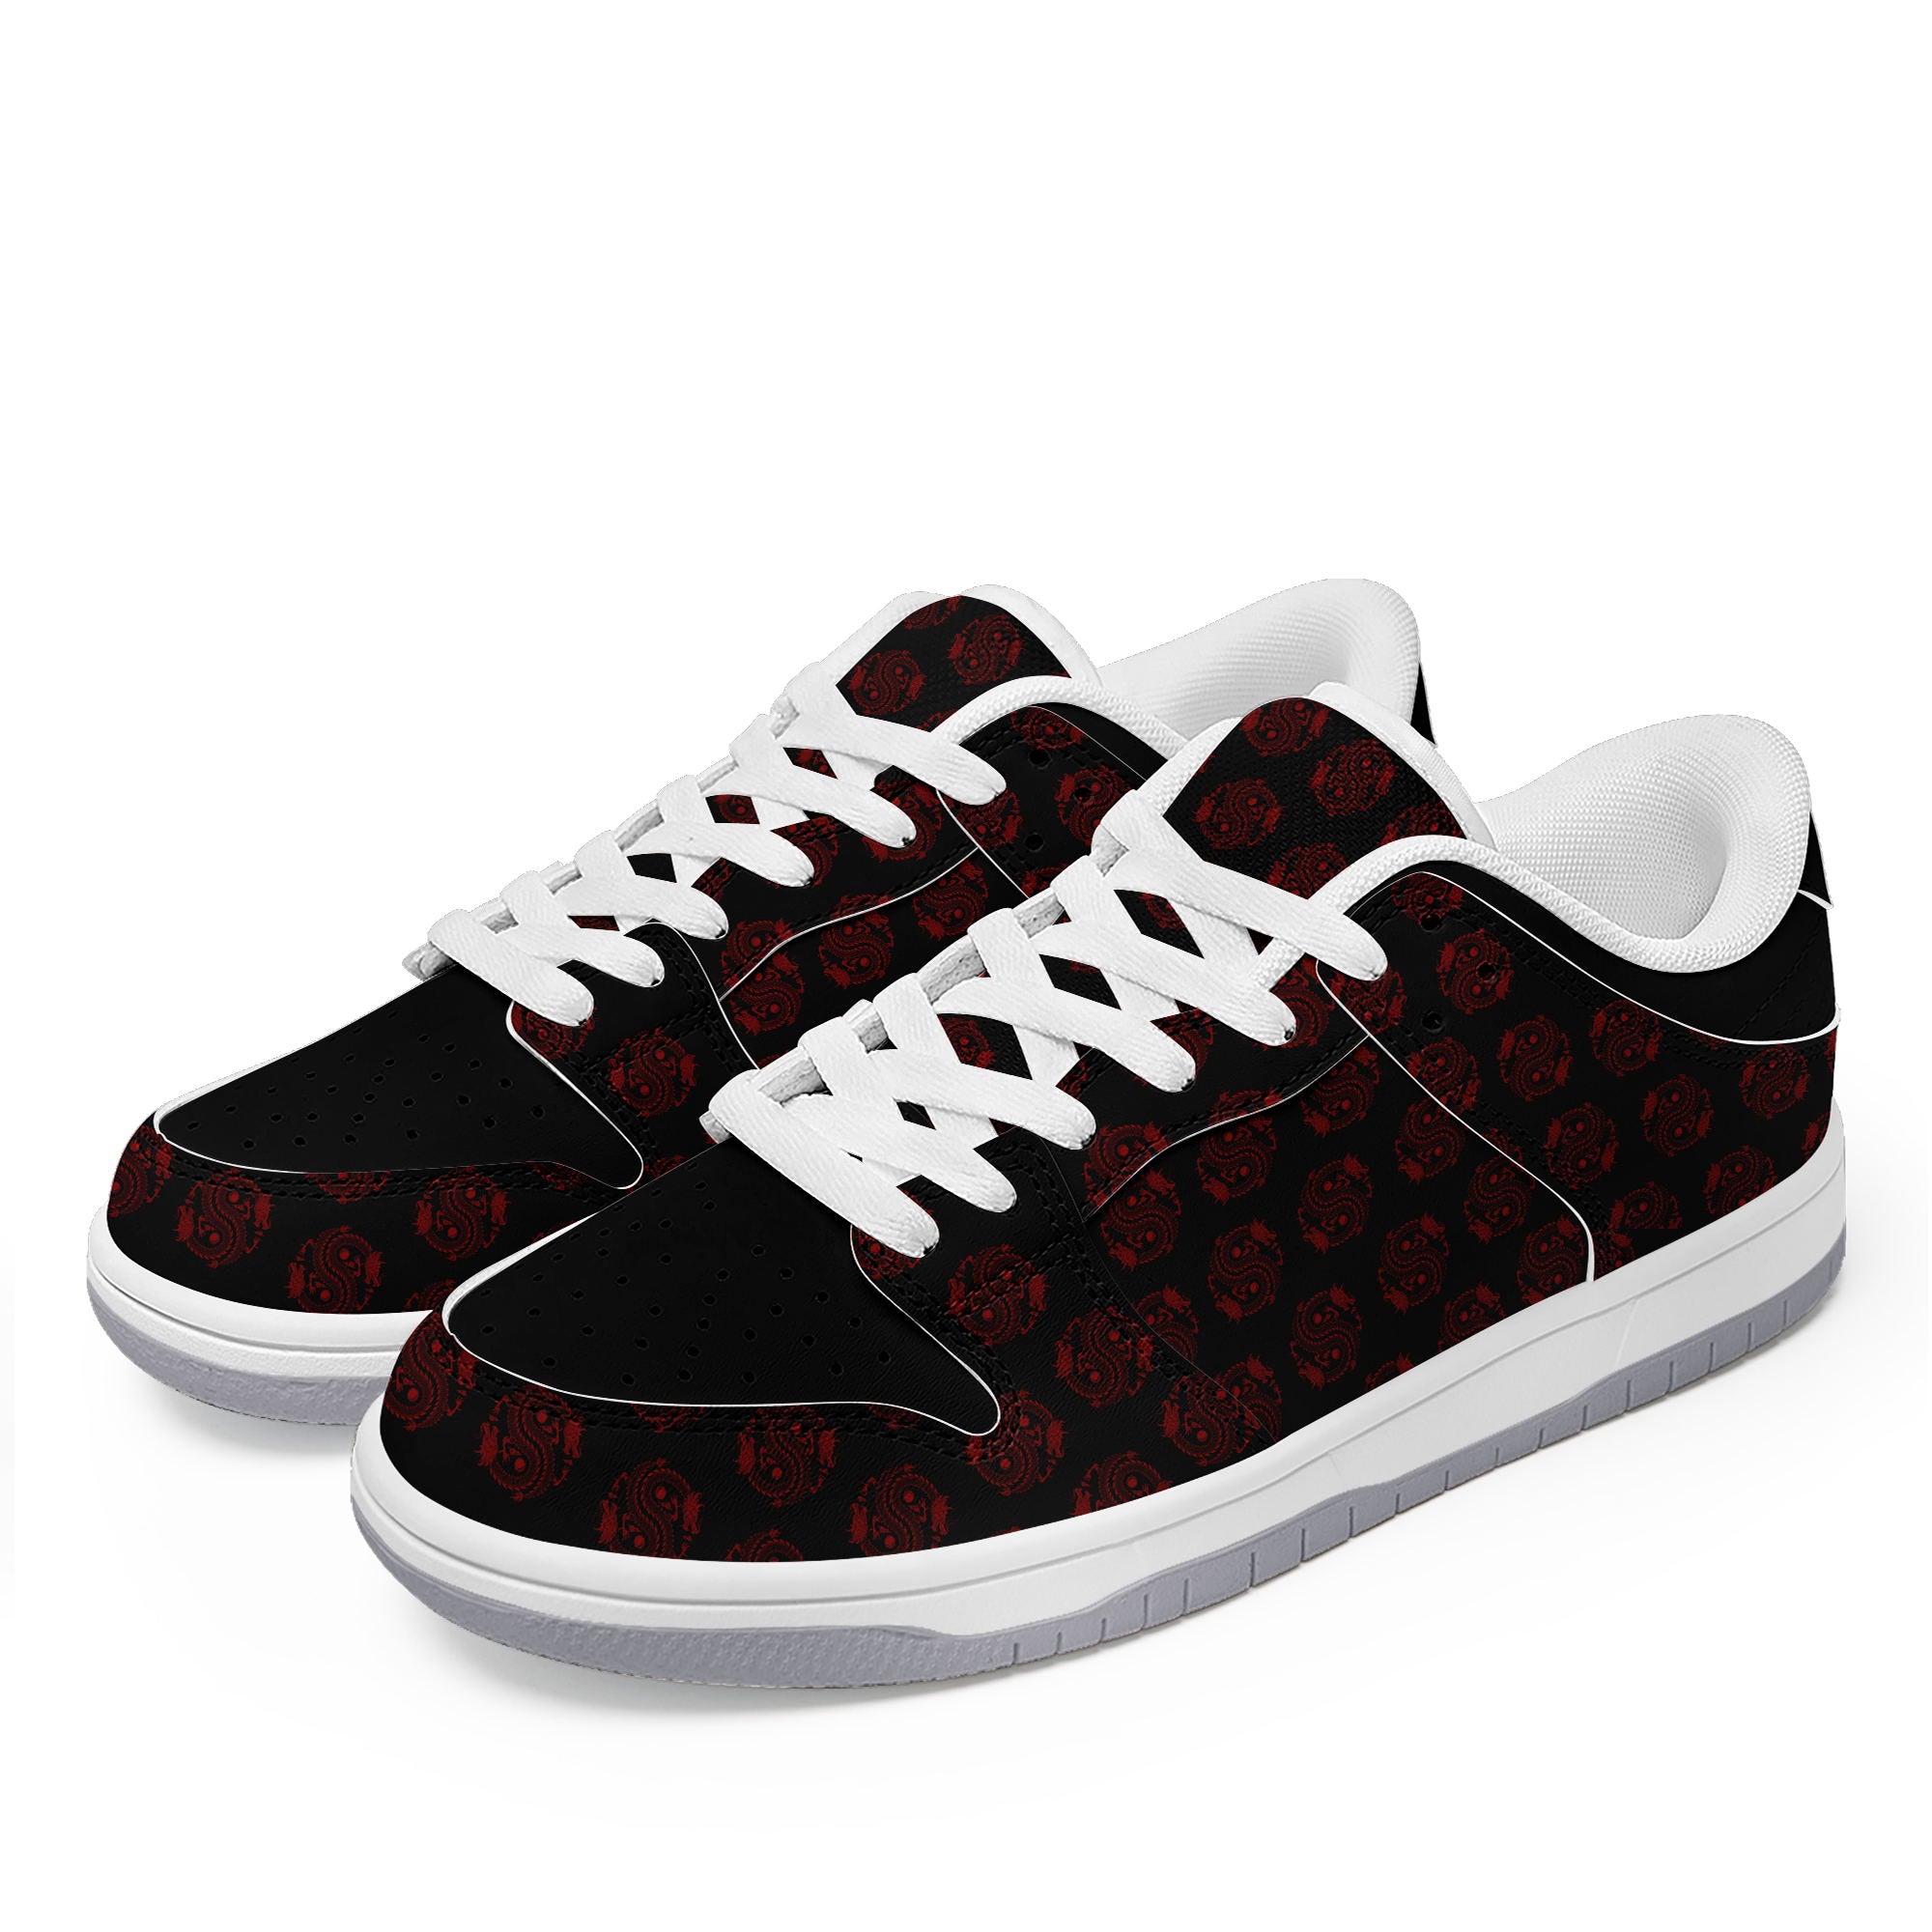 柔性定制打印个性化设计中国龙图腾休闲鞋黑红色白鞋带DK-24025005_3